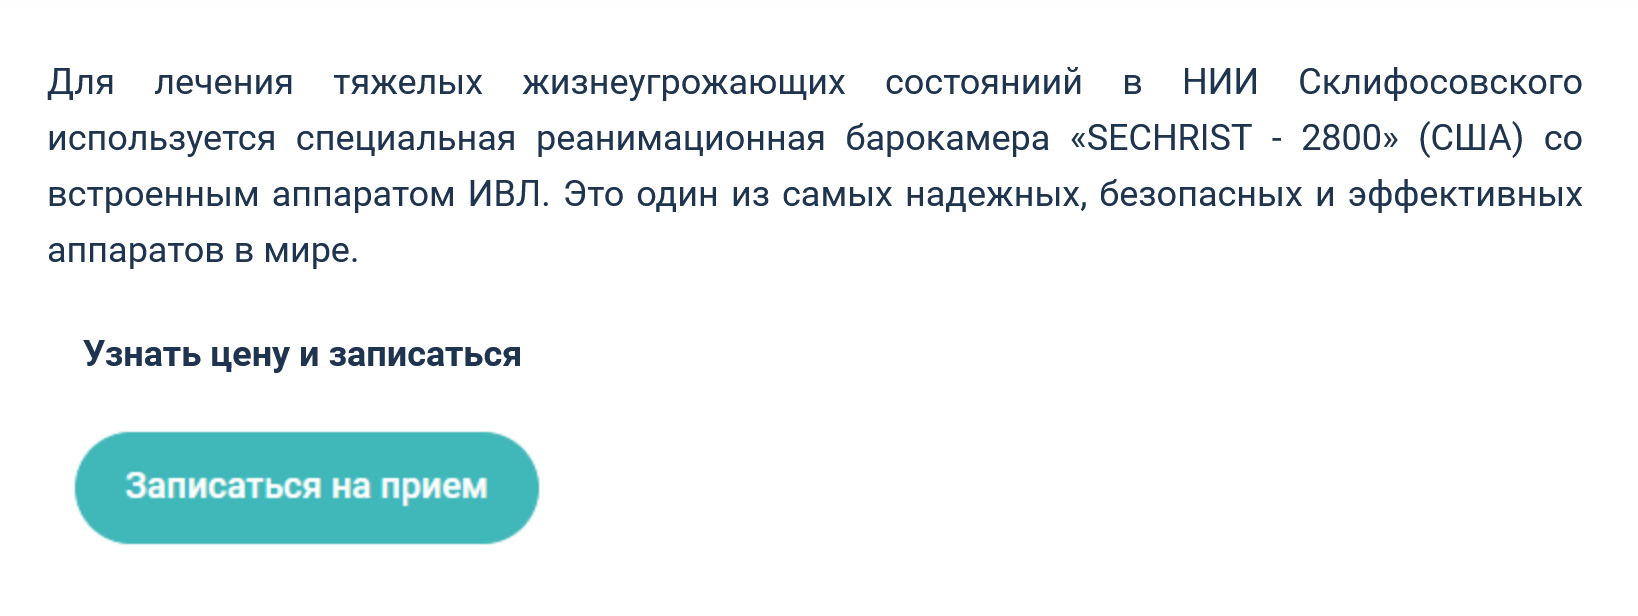 На сайте НИИ имени Склифосовского предлагают услуги стационарной барокамеры Sechrist 2800. Источник: sklif.mos.ru